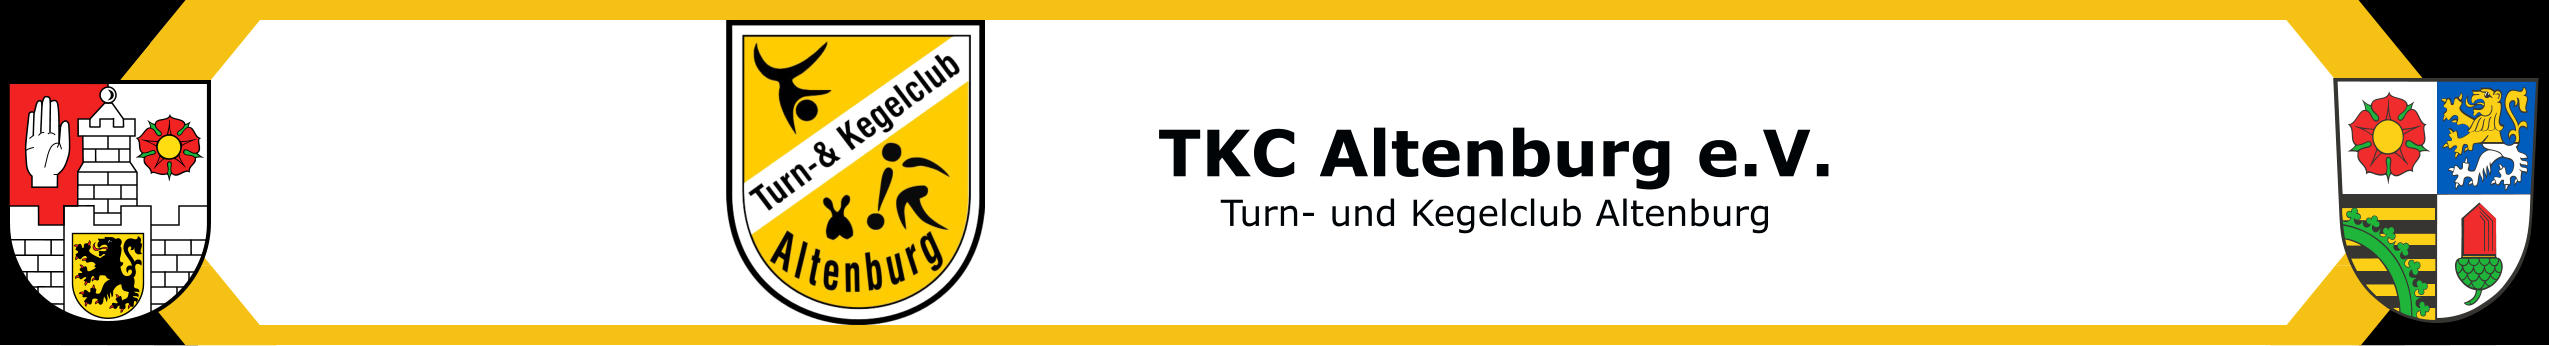 TKC Altenburg e.V. Turn- und Kegelclub Altenburg